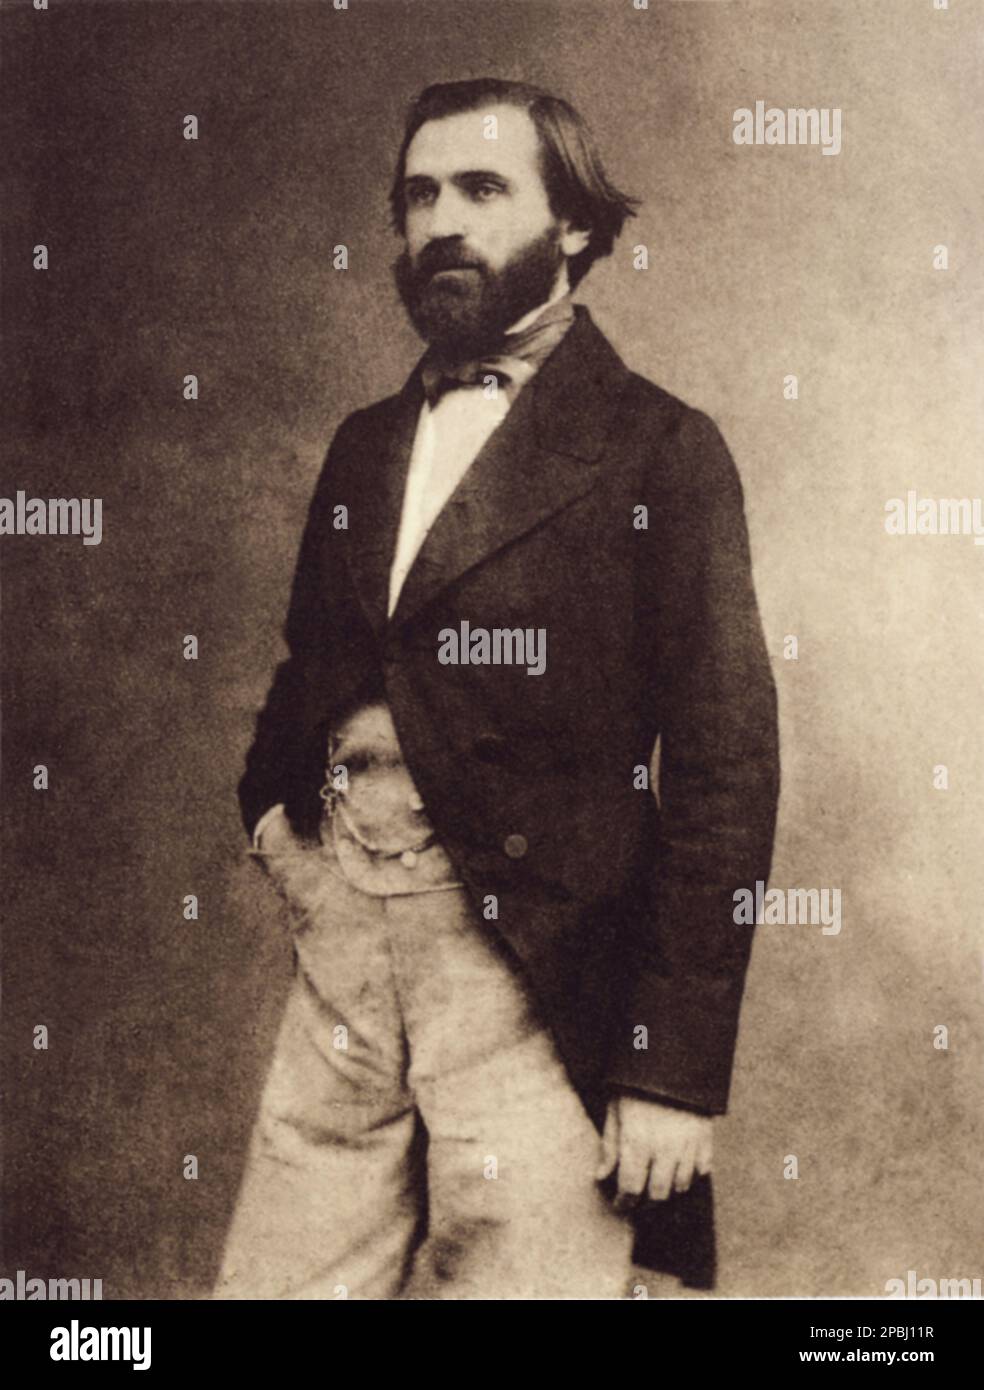 1857 , Paris , France : The celebrated italian music composer GIUSEPPE VERDI ( 1813 - 1901 ). Photo by E. Disderi - COMPOSITORE - OPERA LIRICA - CLASSICA - CLASSICAL - PORTRAIT - RITRATTO - MUSICISTA - MUSICA - BEARD - BARBA - FIOCCO - BOW - CRAVATTA - TIE - papillon ------ ----   ARCHIVIO GBB Stock Photo